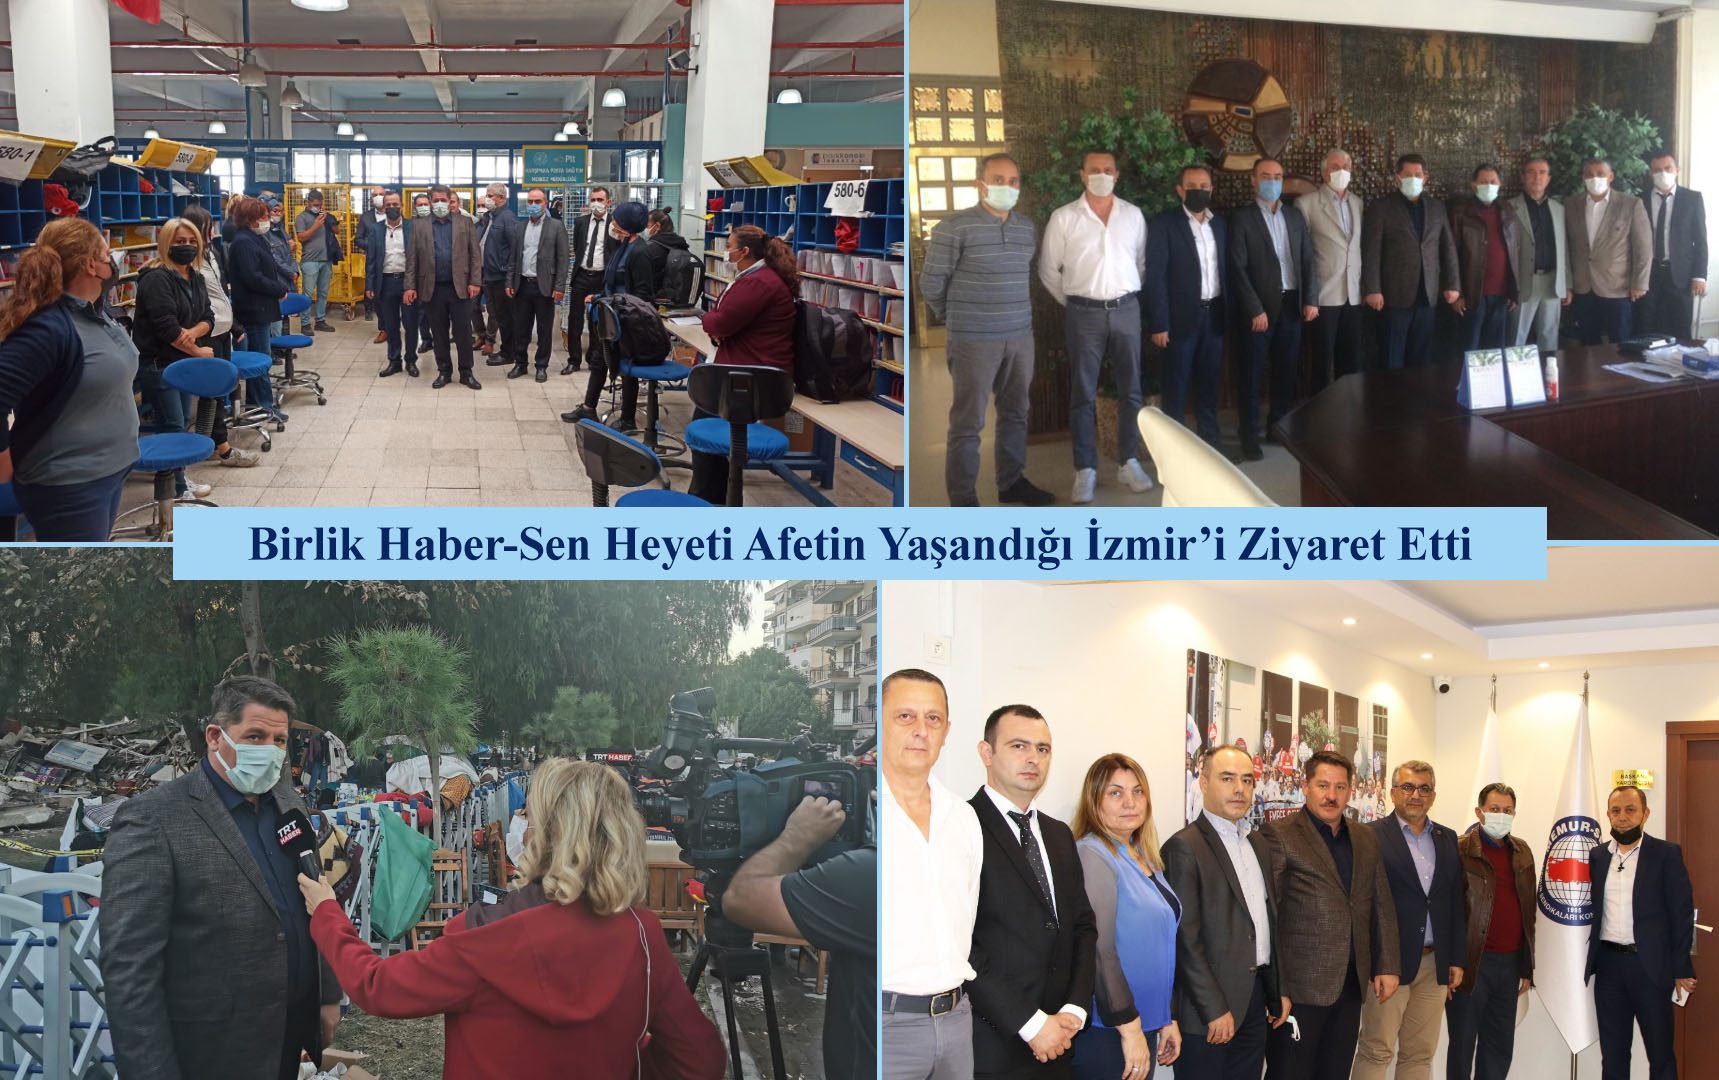 Birlik Haber-Sen Heyeti Afetin Yaşandığı İzmir’i Ziyaret Etti